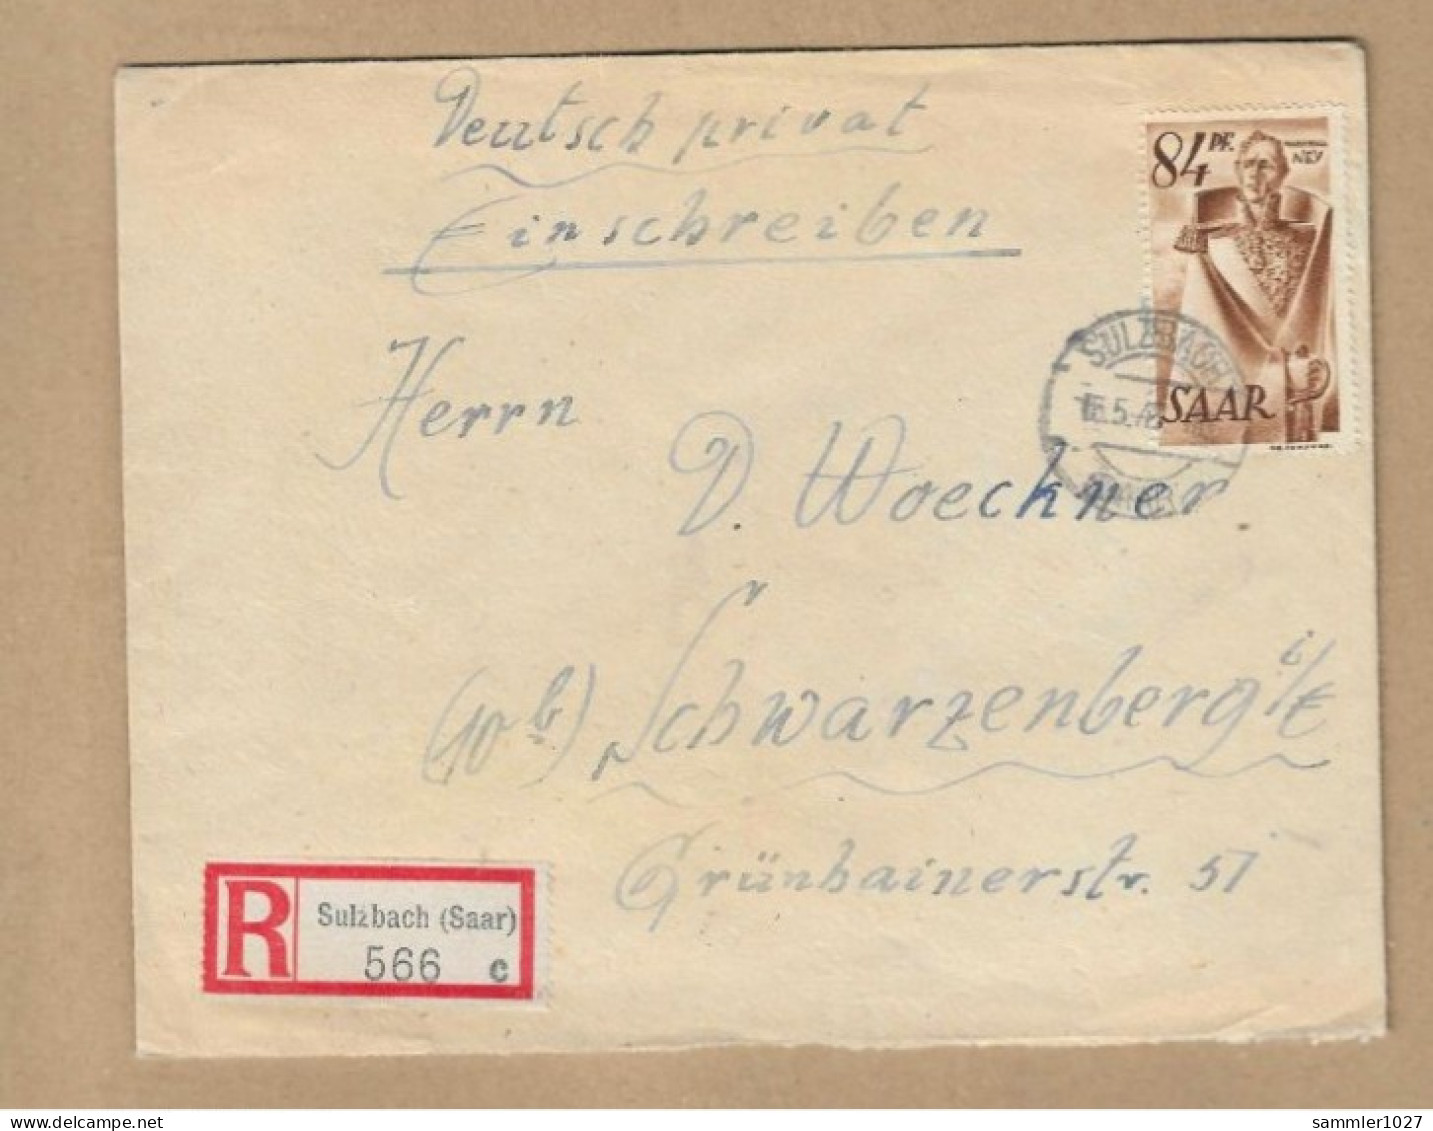 Los Vom 23.04 -  Heimatbeleg Aus Sulzbach 1947  Einschreiben - Storia Postale